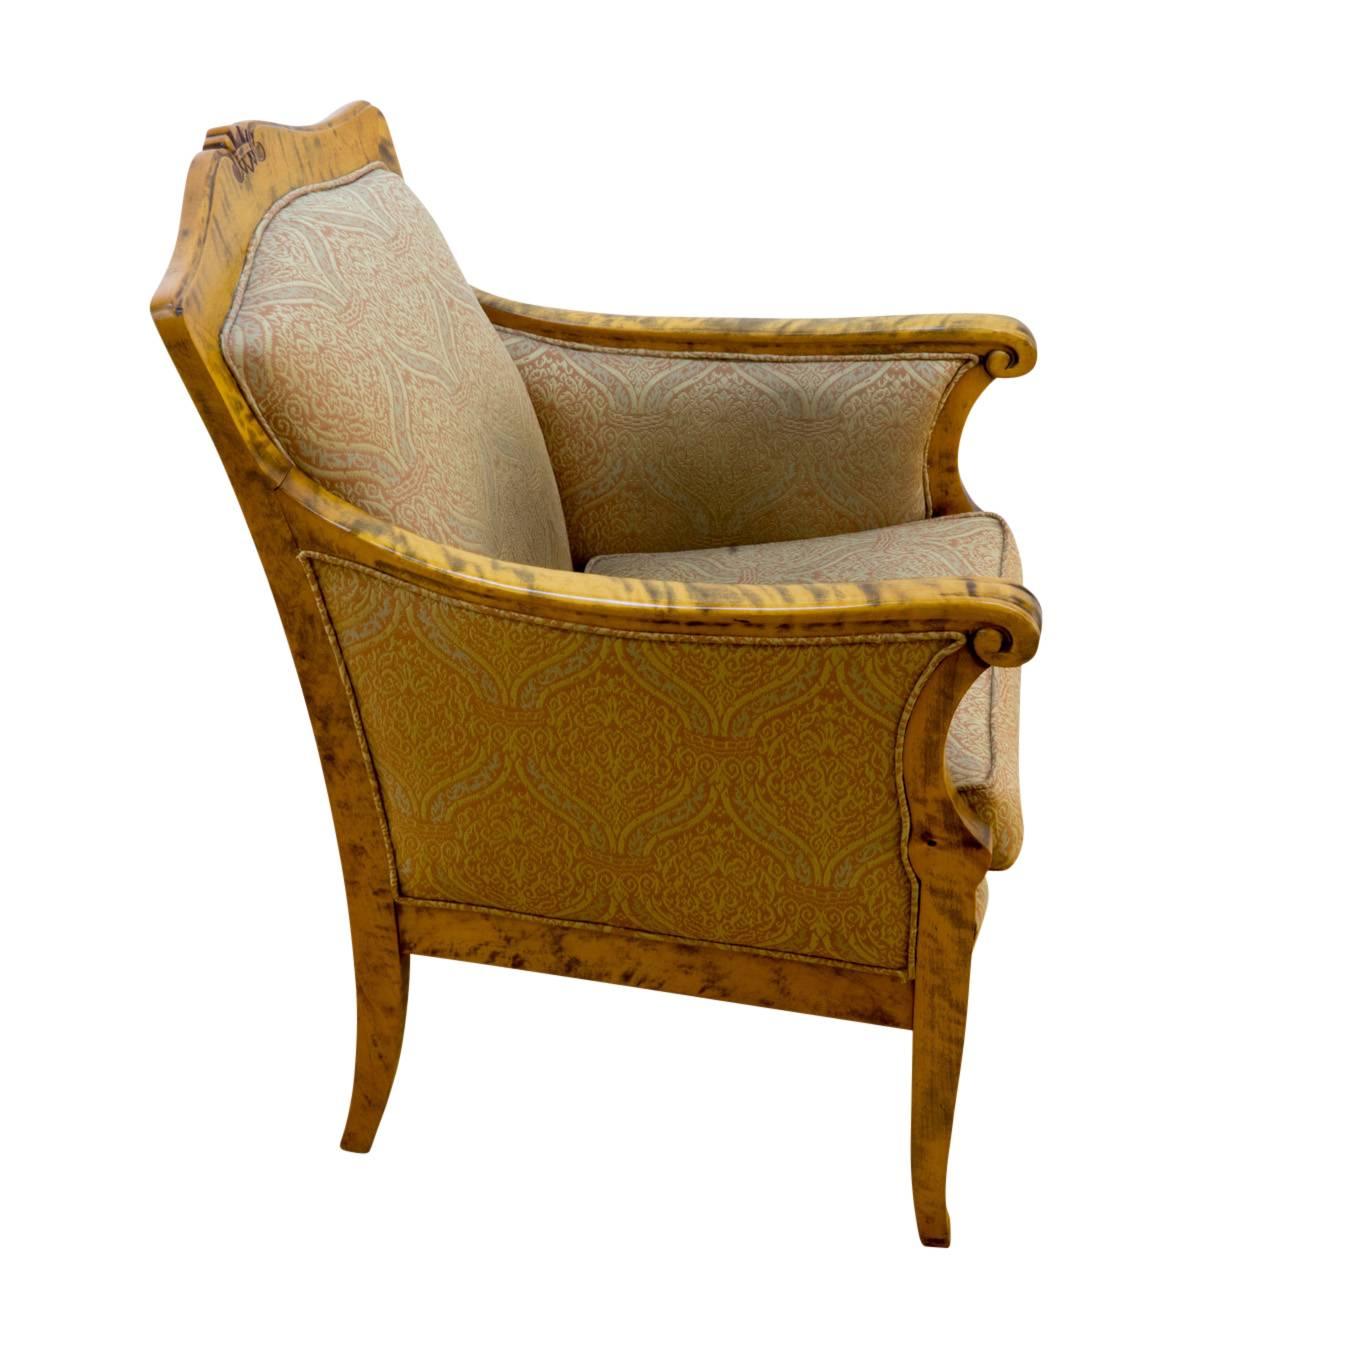 Dieser für ein anmutiges Wohnzimmer des 19. Jahrhunderts entworfene Stuhl ist aus massiver, stark gemaserter Birke gefertigt und mit einem zeitgemäßen, aber modernen Stoff neu gepolstert. Das Hinzufügen eines Sitzkissens bei der Neupolsterung erhöht